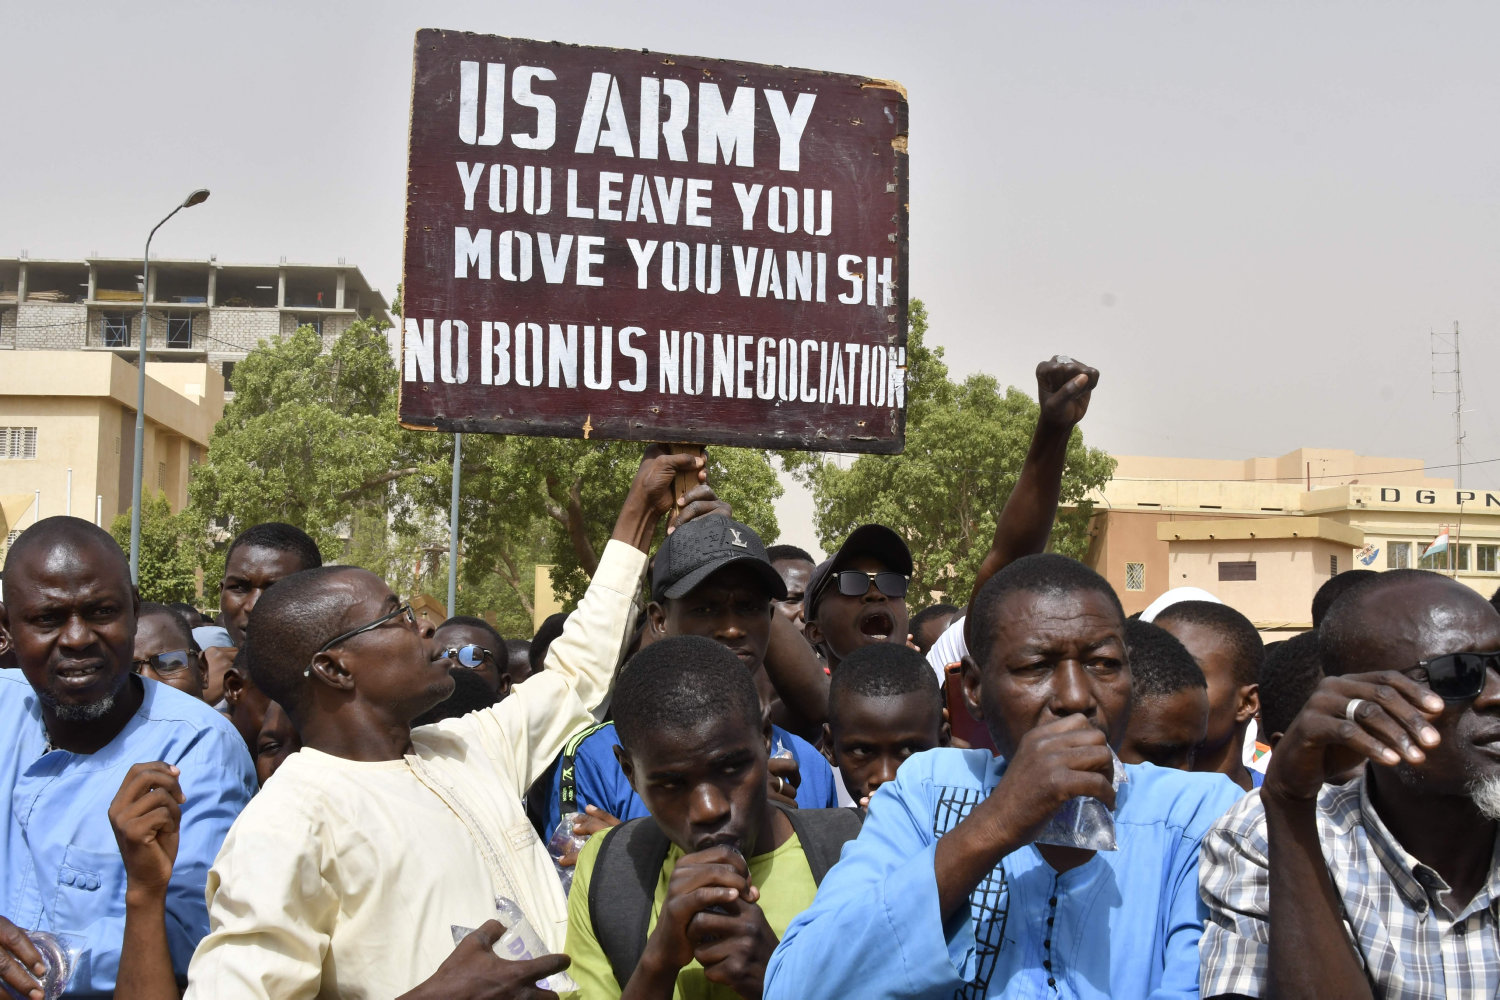 rusland flytter ind på base med amerikanske soldater i niger